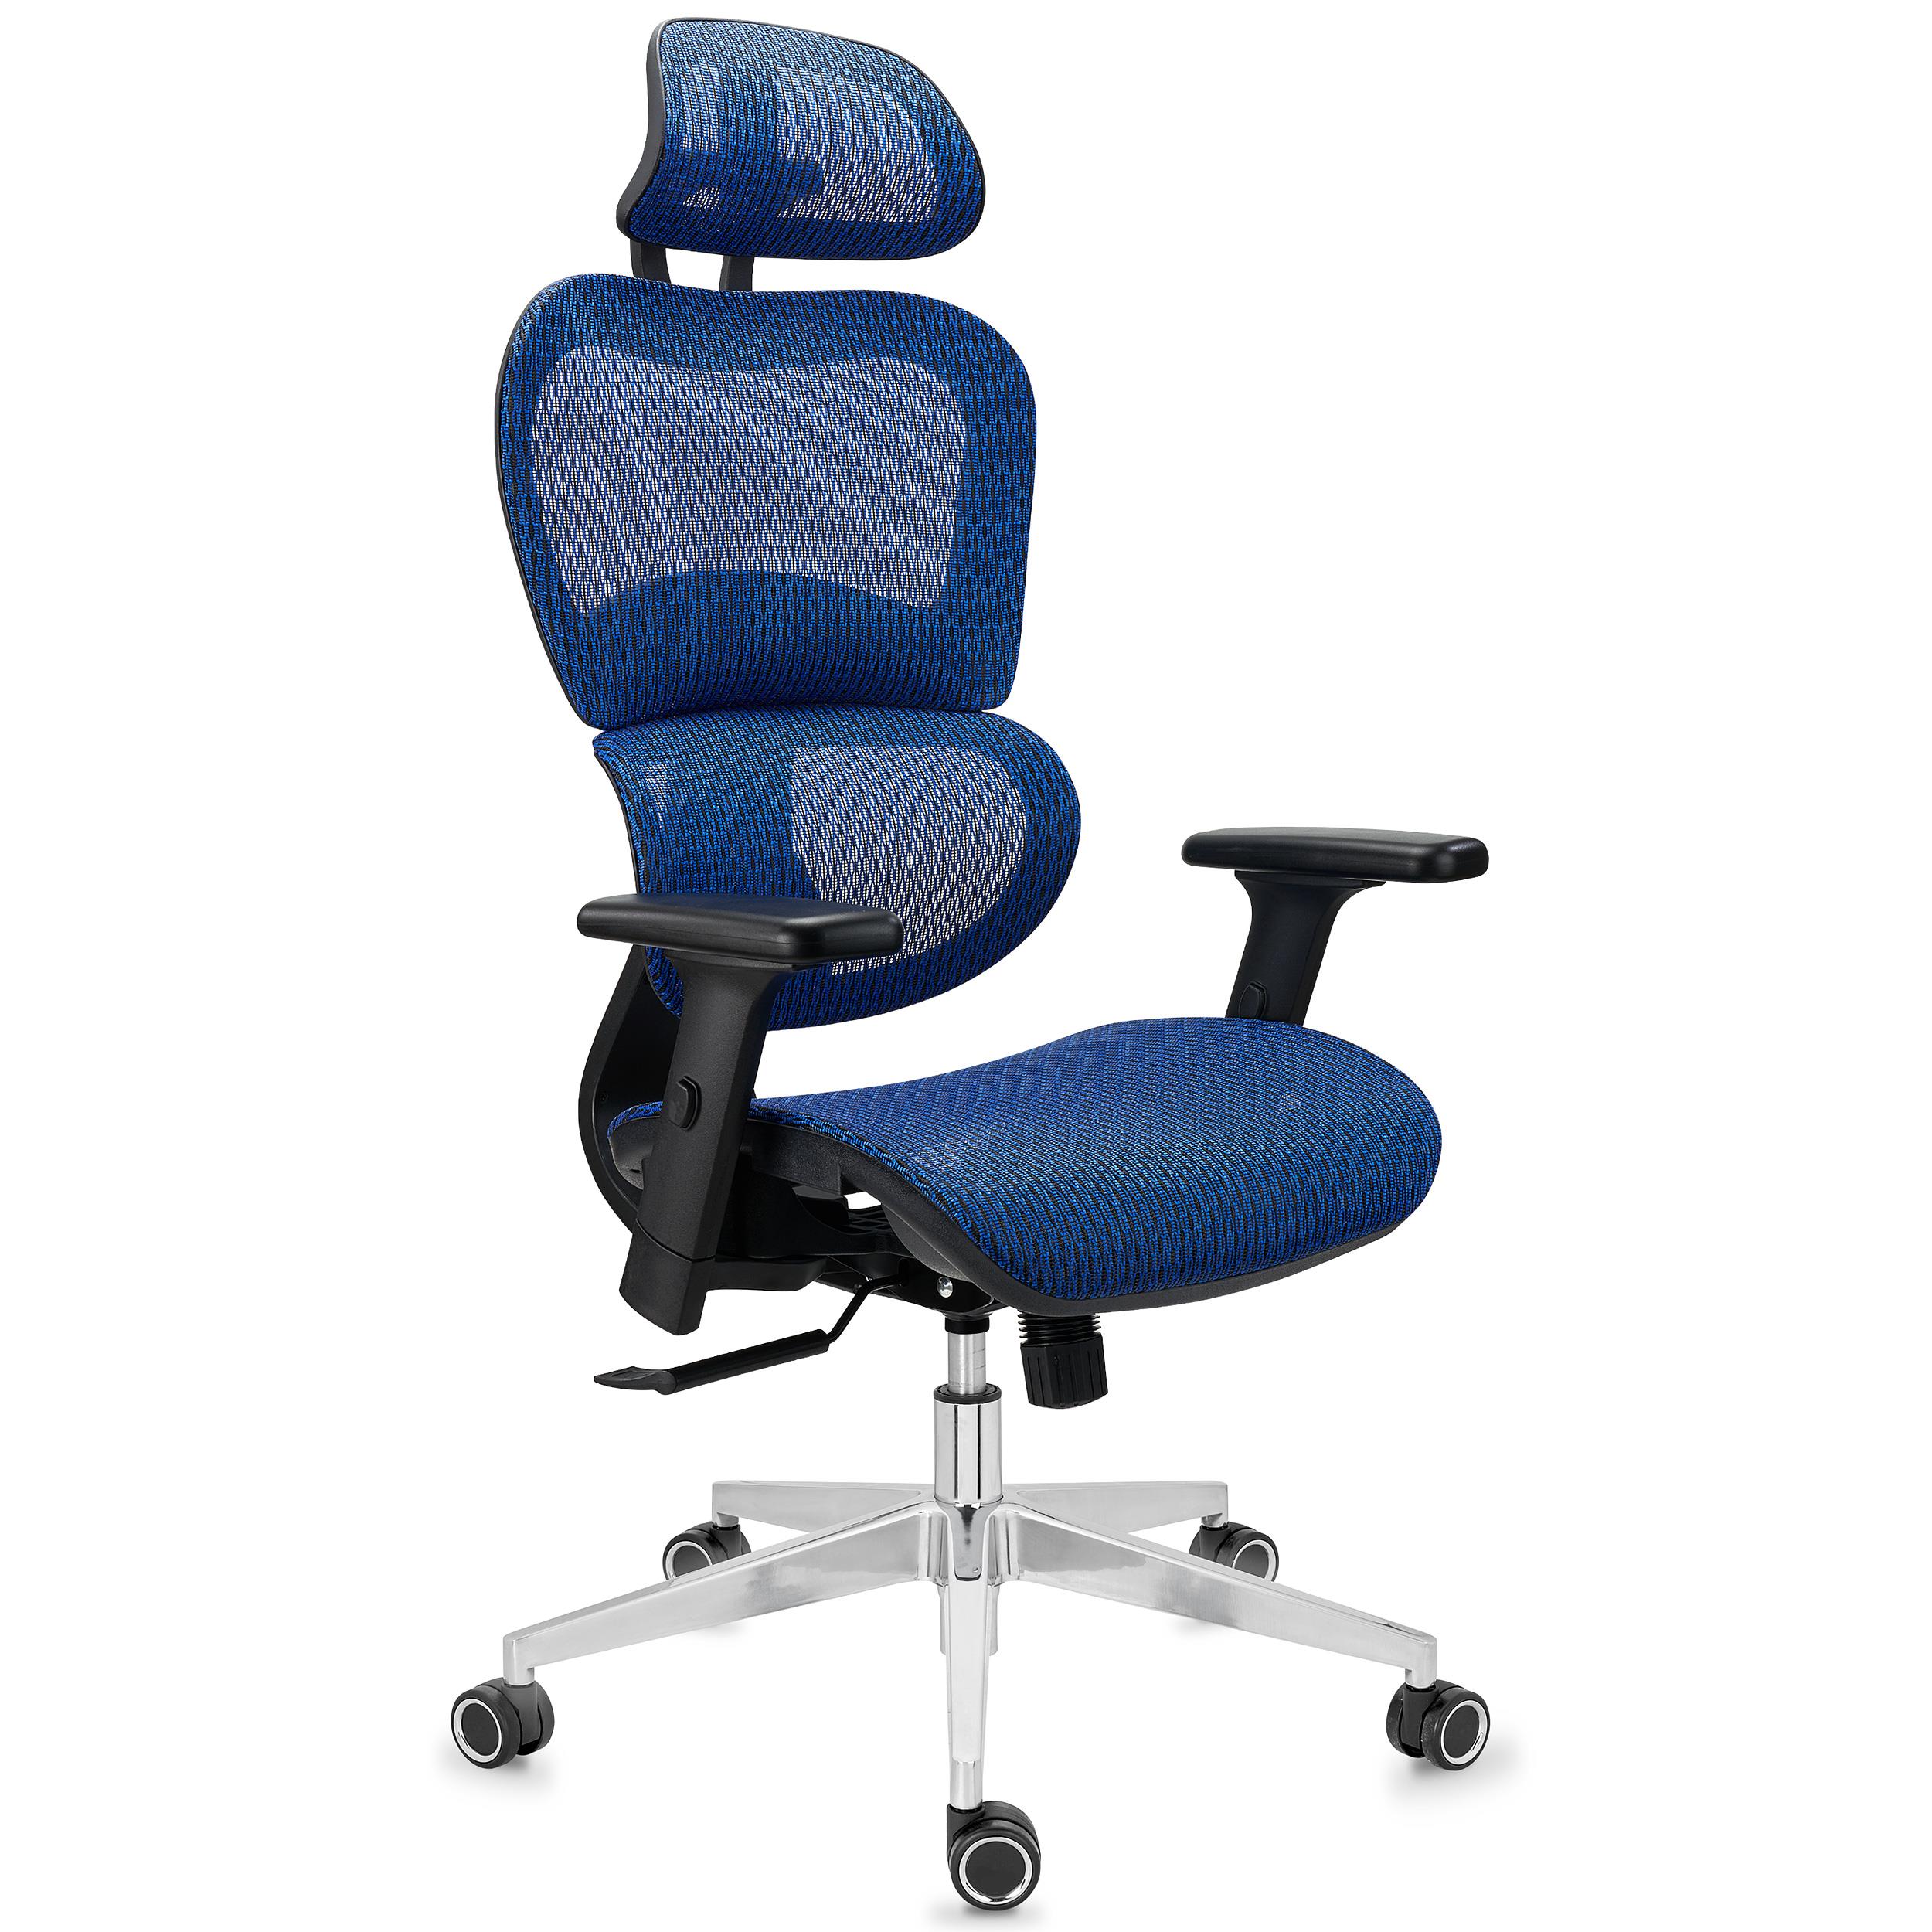 Ergonomischer Bürostuhl VICTORY, 100% regulierbar, maximaler Komfort, 8h-Nutzung, Netzstoff, Farbe Blau